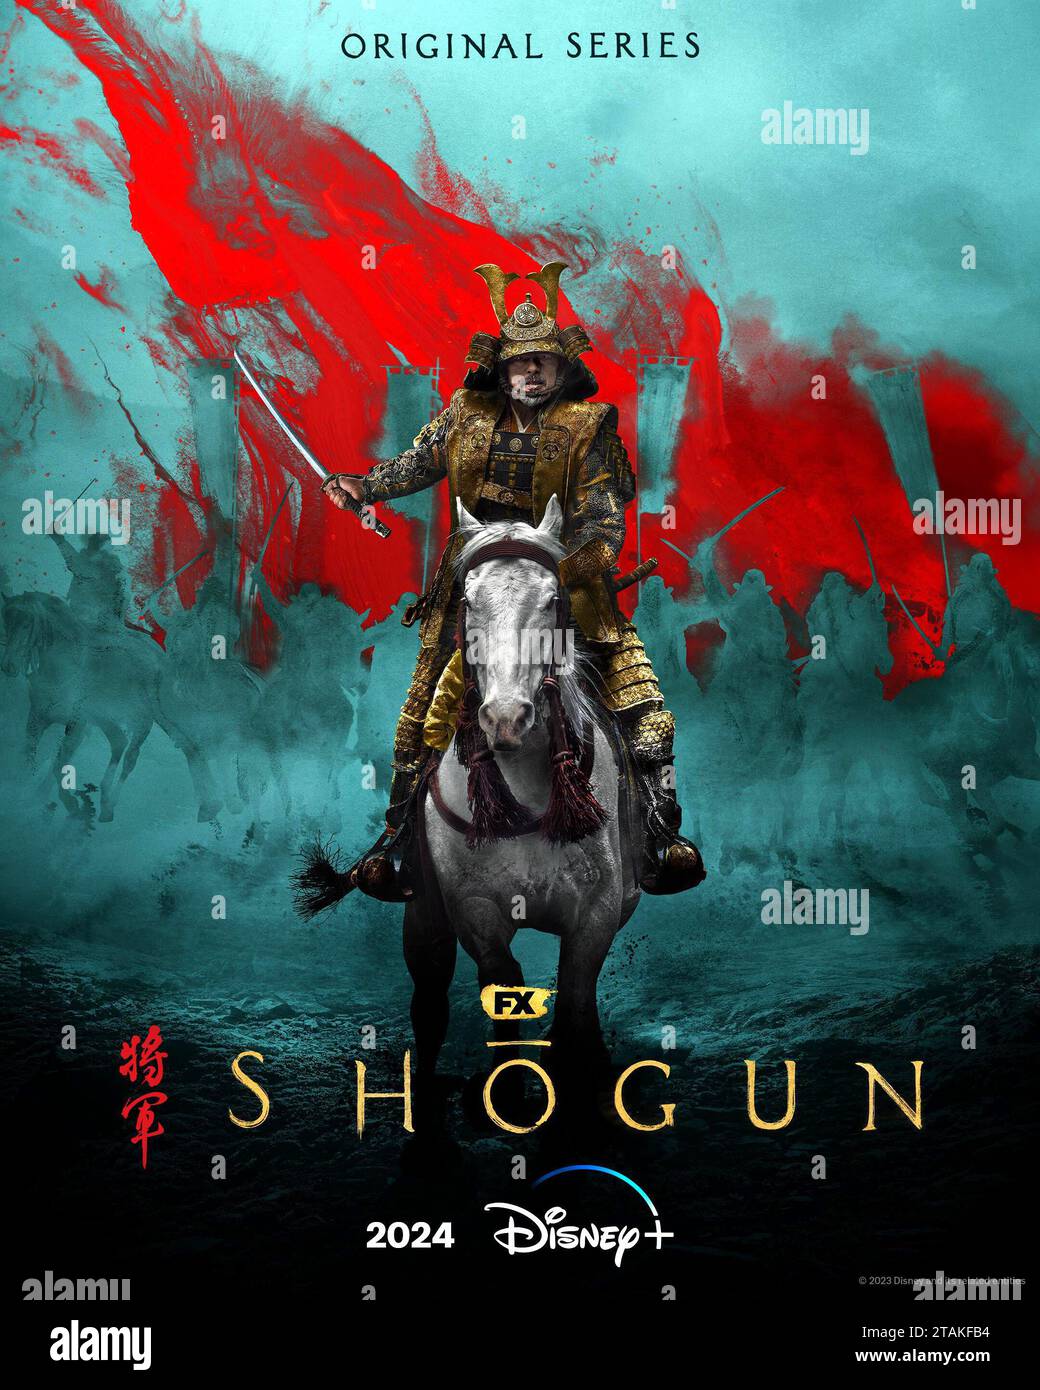 Shogun poster Stock Photo